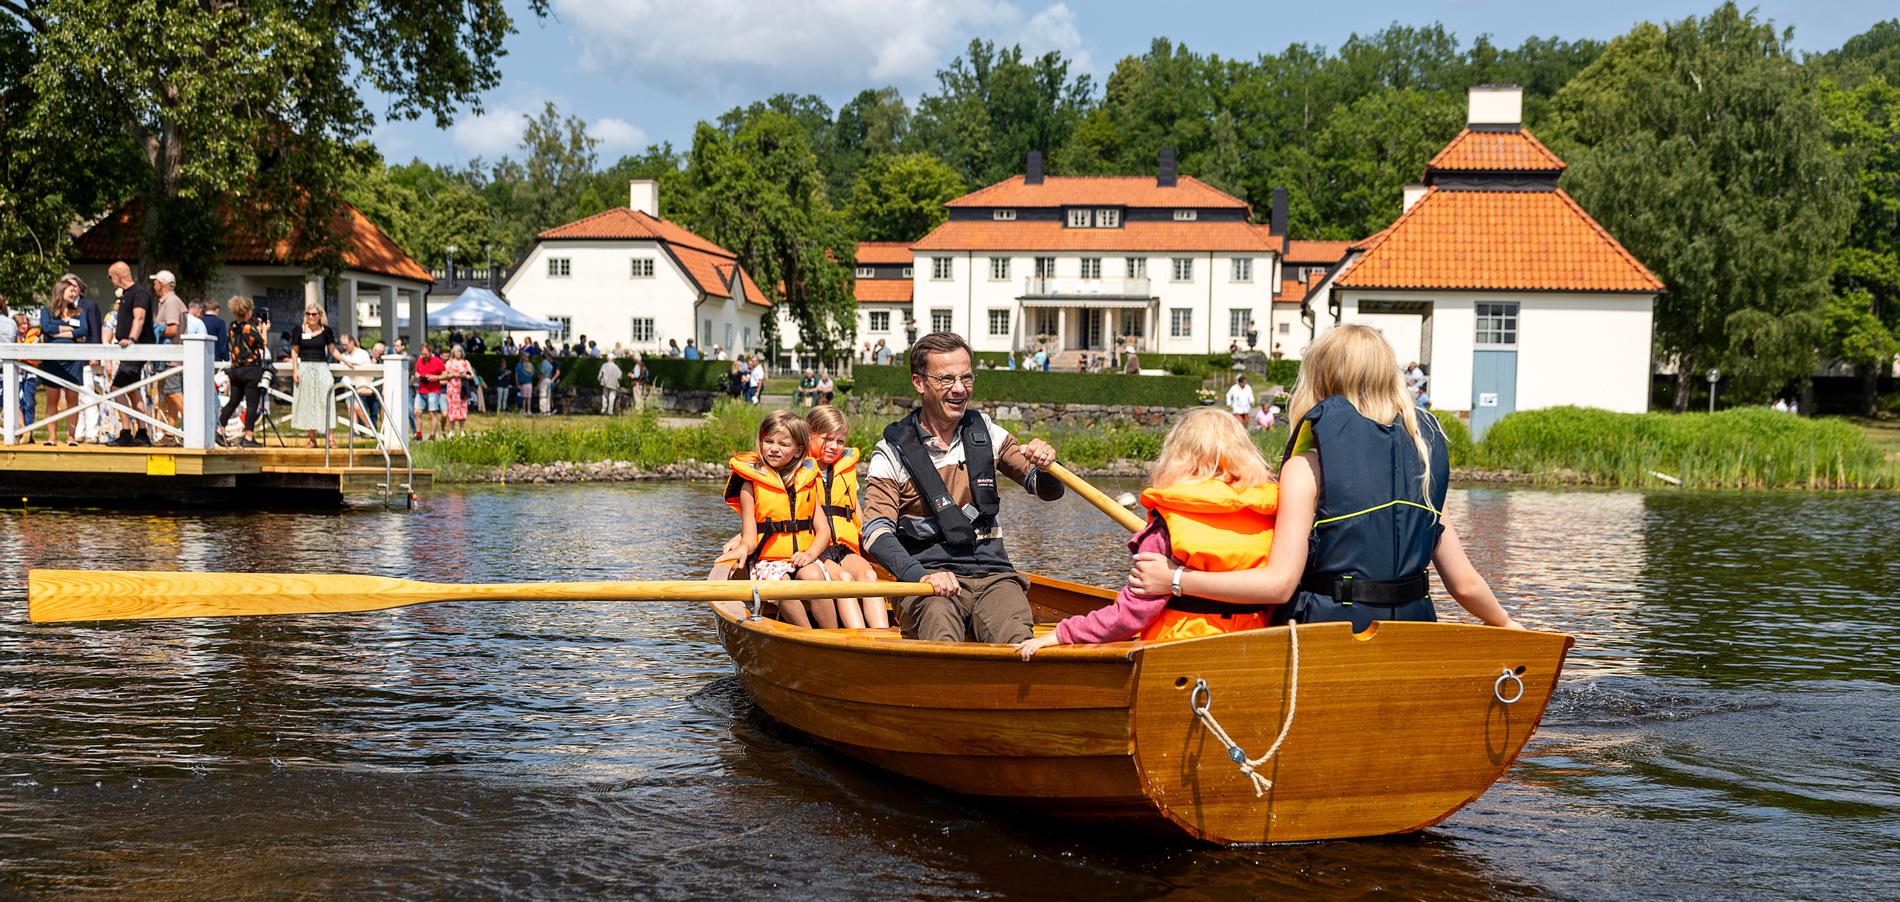 Statsminister Ulf Kristersson (M) ror omkring med lokala barn i Harpsundsekan i Harpsund. Men styr han landet åt rätt håll?